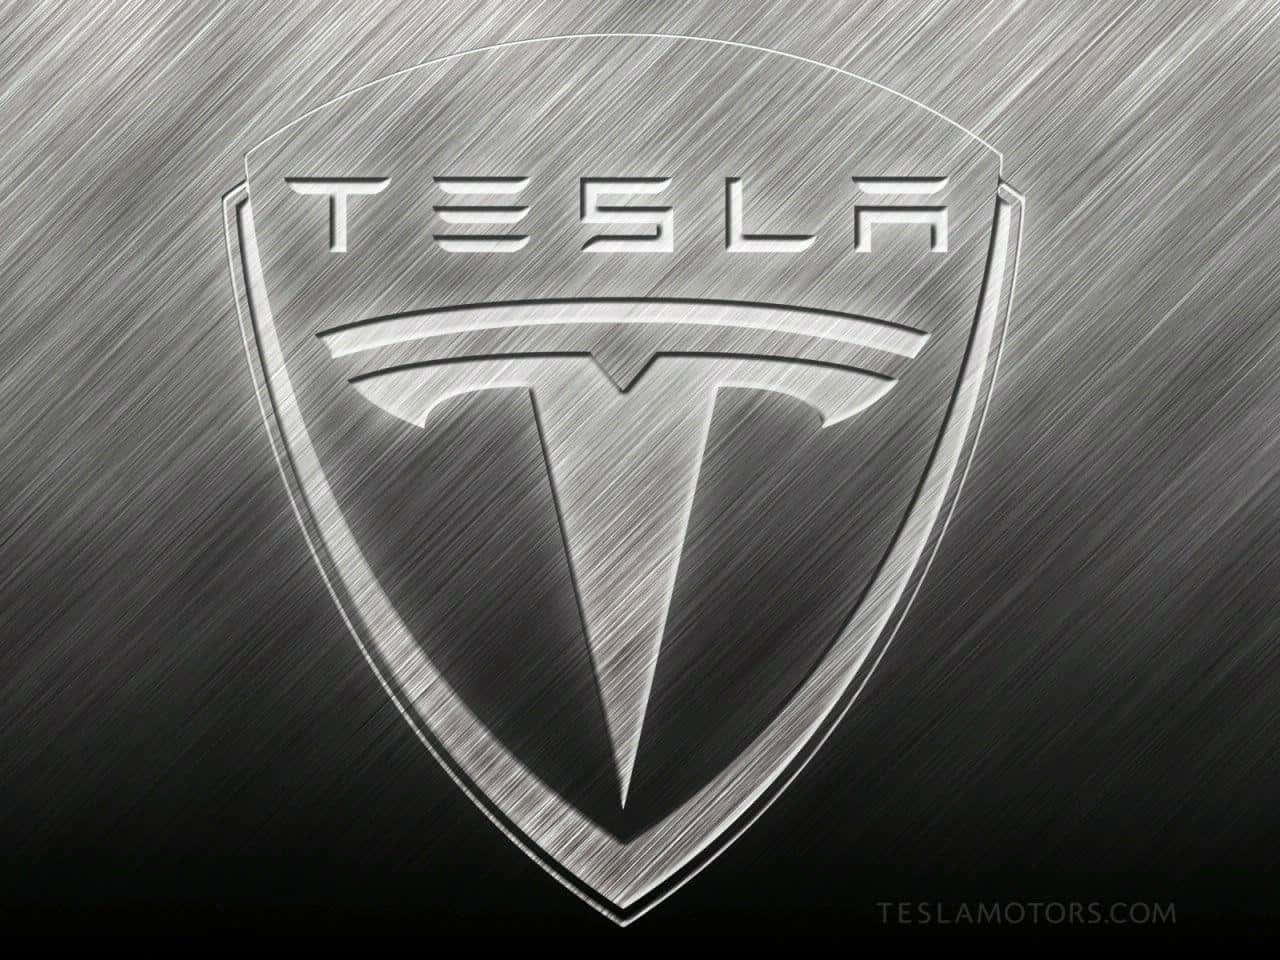 Tesla-logo 4k 1280 X 960 Wallpaper